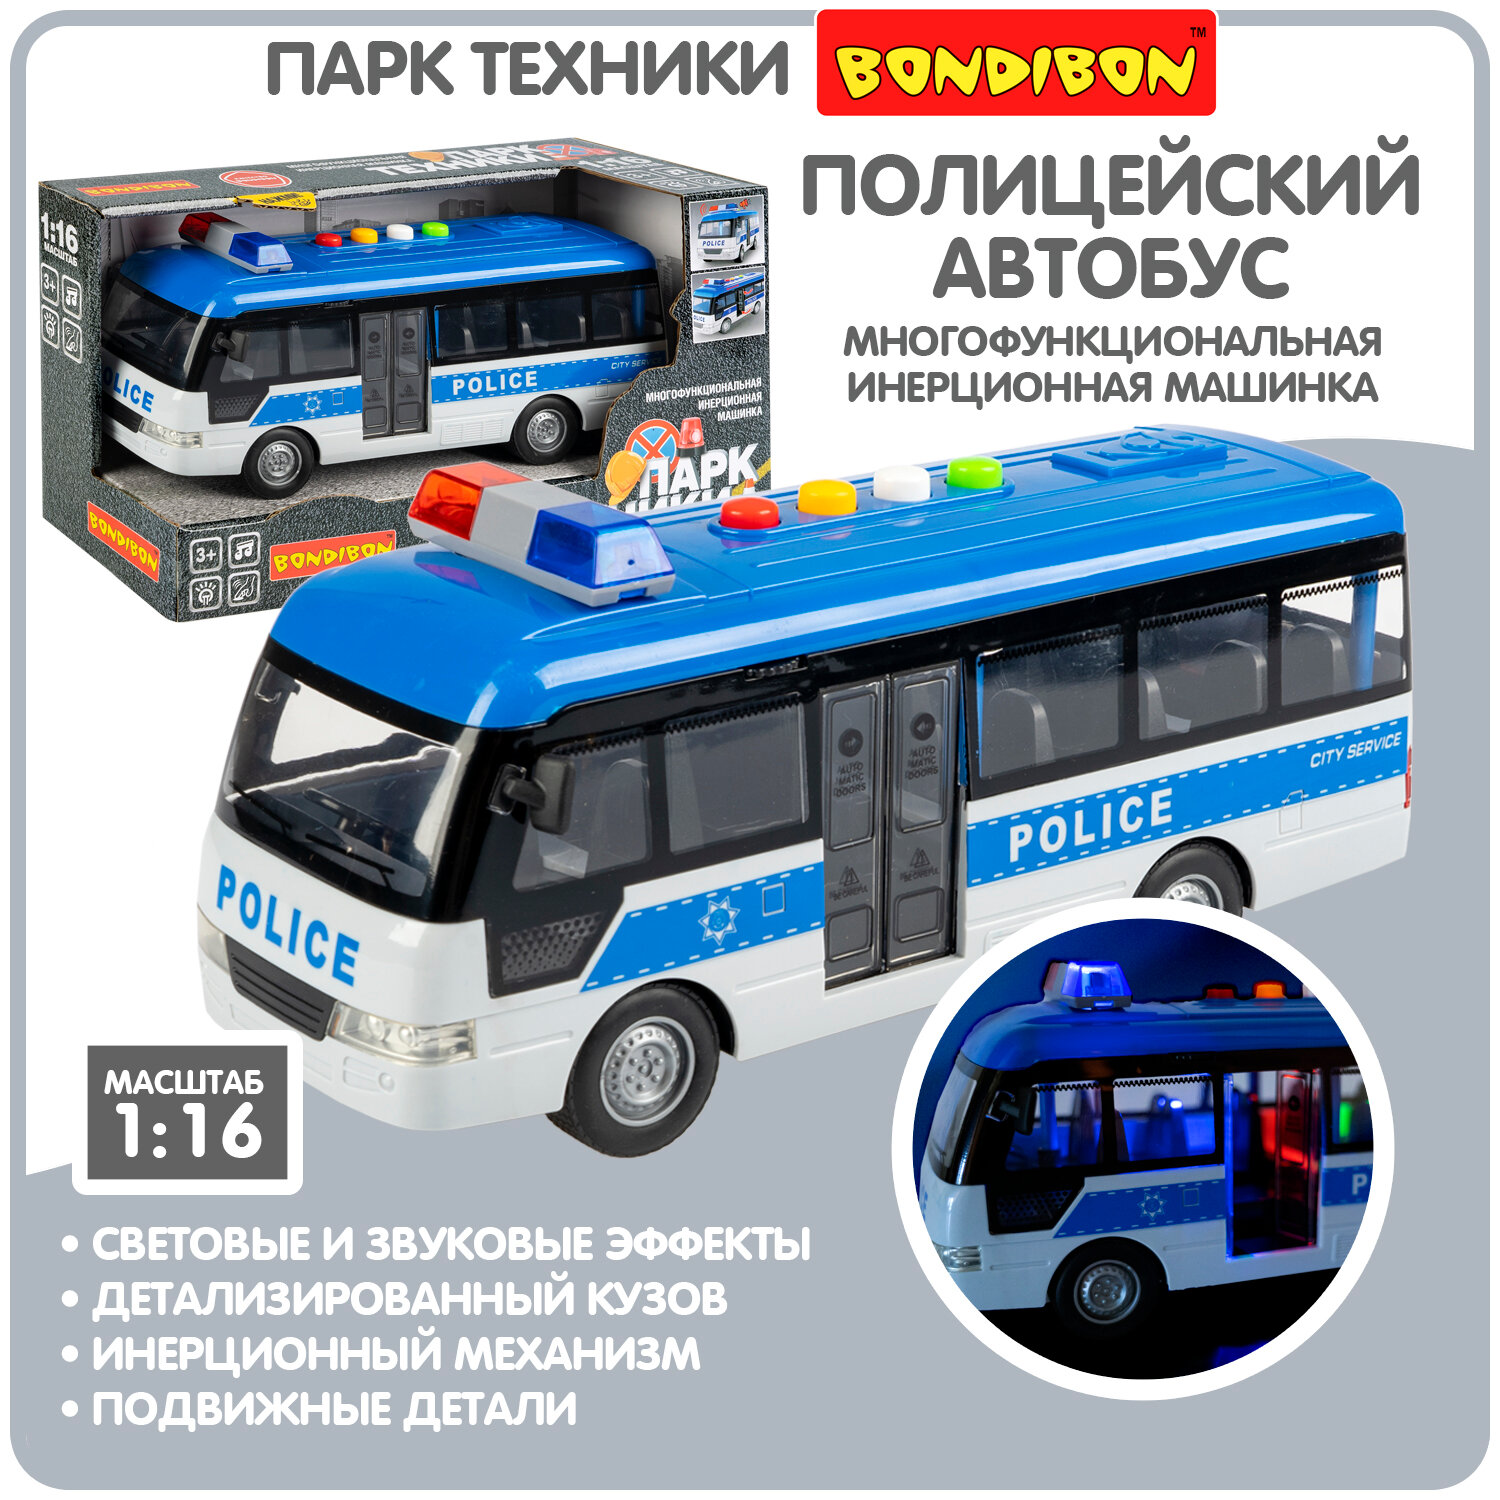 Полицейская машинка для мальчиков автобус Bondibon "Парк техники" инерционная детская игрушка, спецслужба полиция